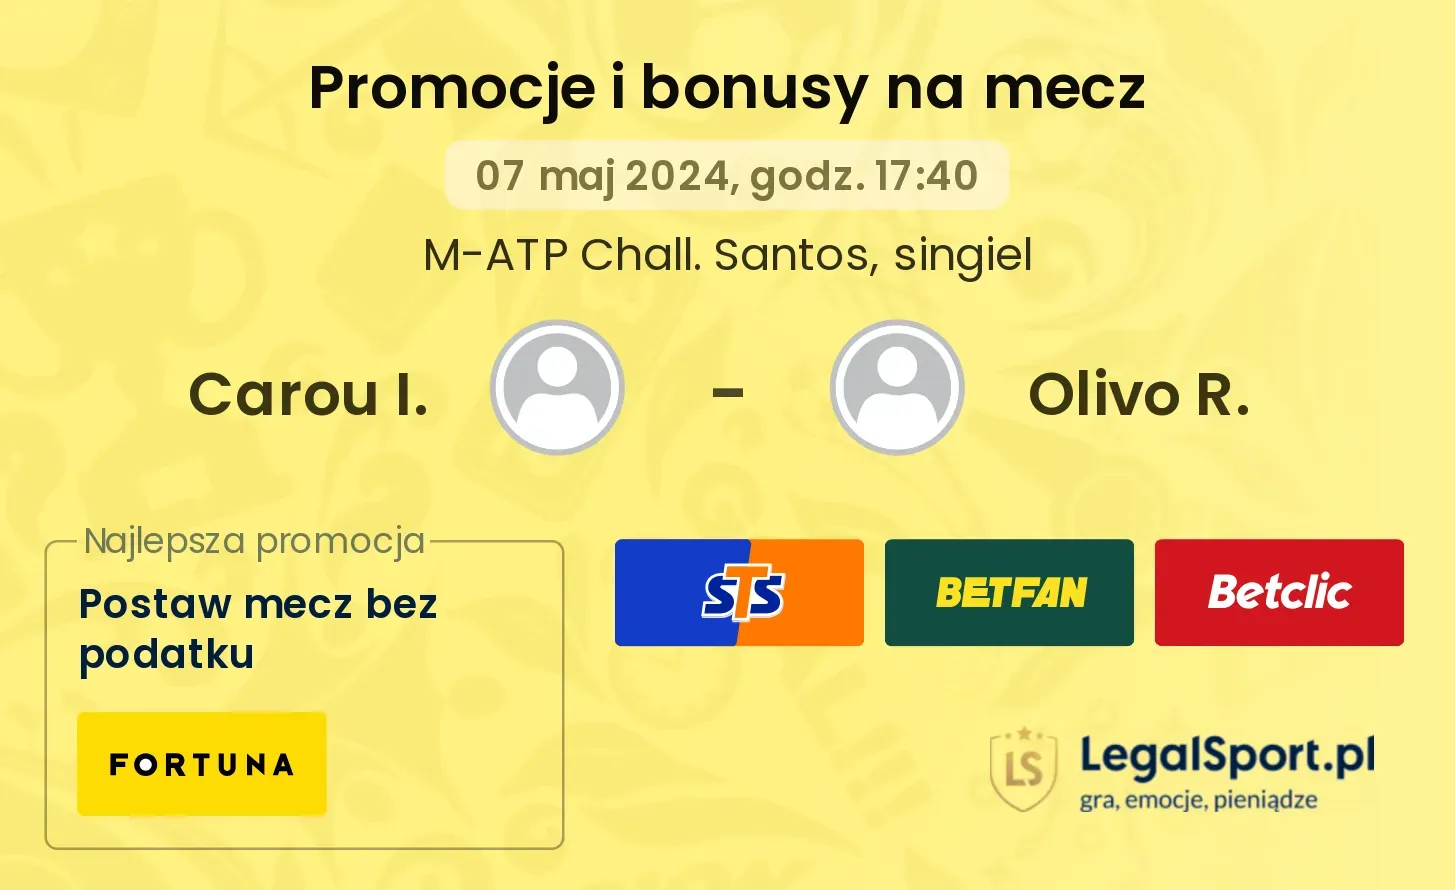 Carou I. - Olivo R. promocje bonusy na mecz